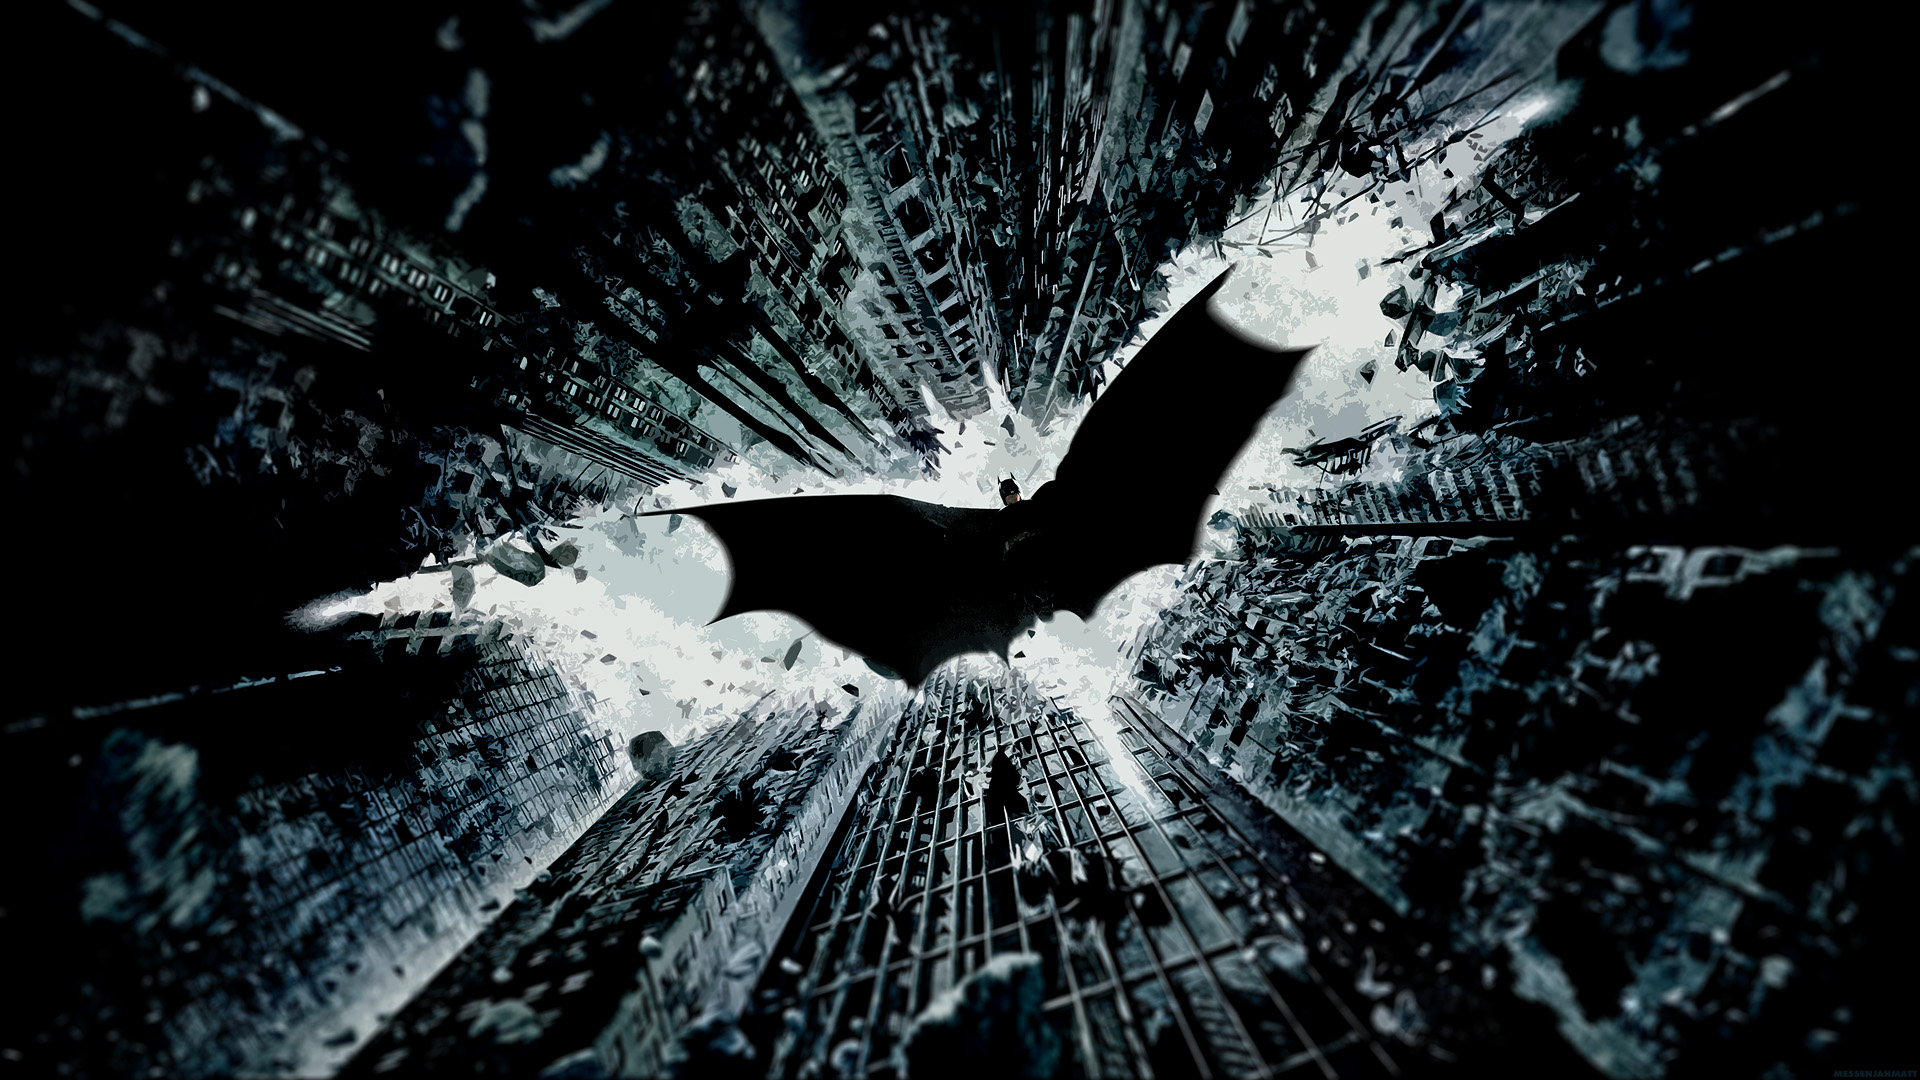 Best Batman Images Free Download 